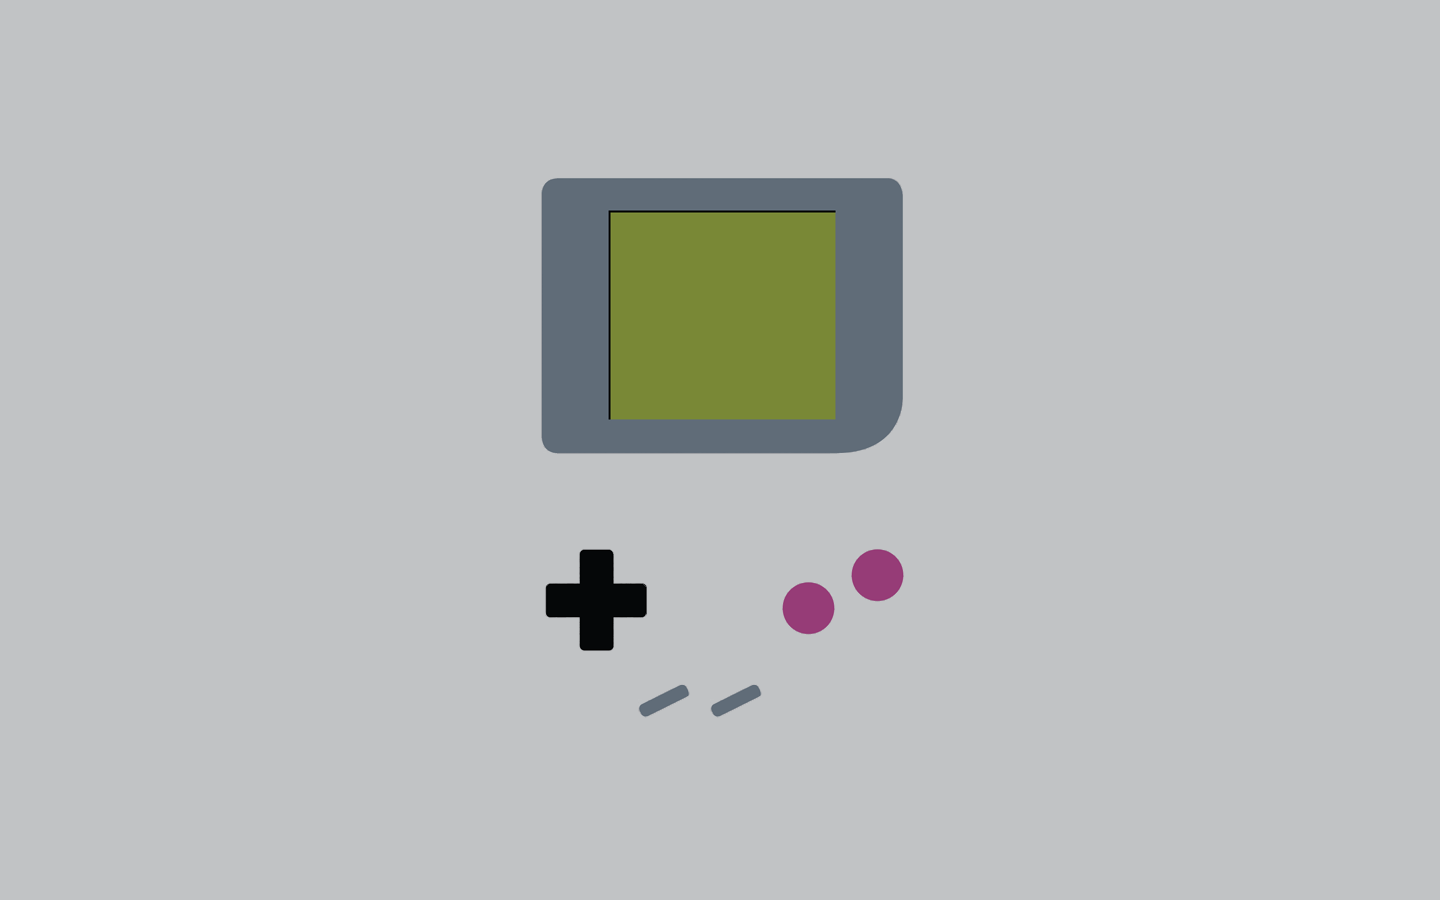 Hình nền Gameboy đem lại sự tinh tế và đầy đủ cho phong cách của bạn. Với những hình ảnh độc đáo, các trò chơi kinh điển và màu sắc tươi sáng, bạn sẽ tìm thấy không gian hoàn hảo cho sở thích của bạn trong thế giới của Gameboy.